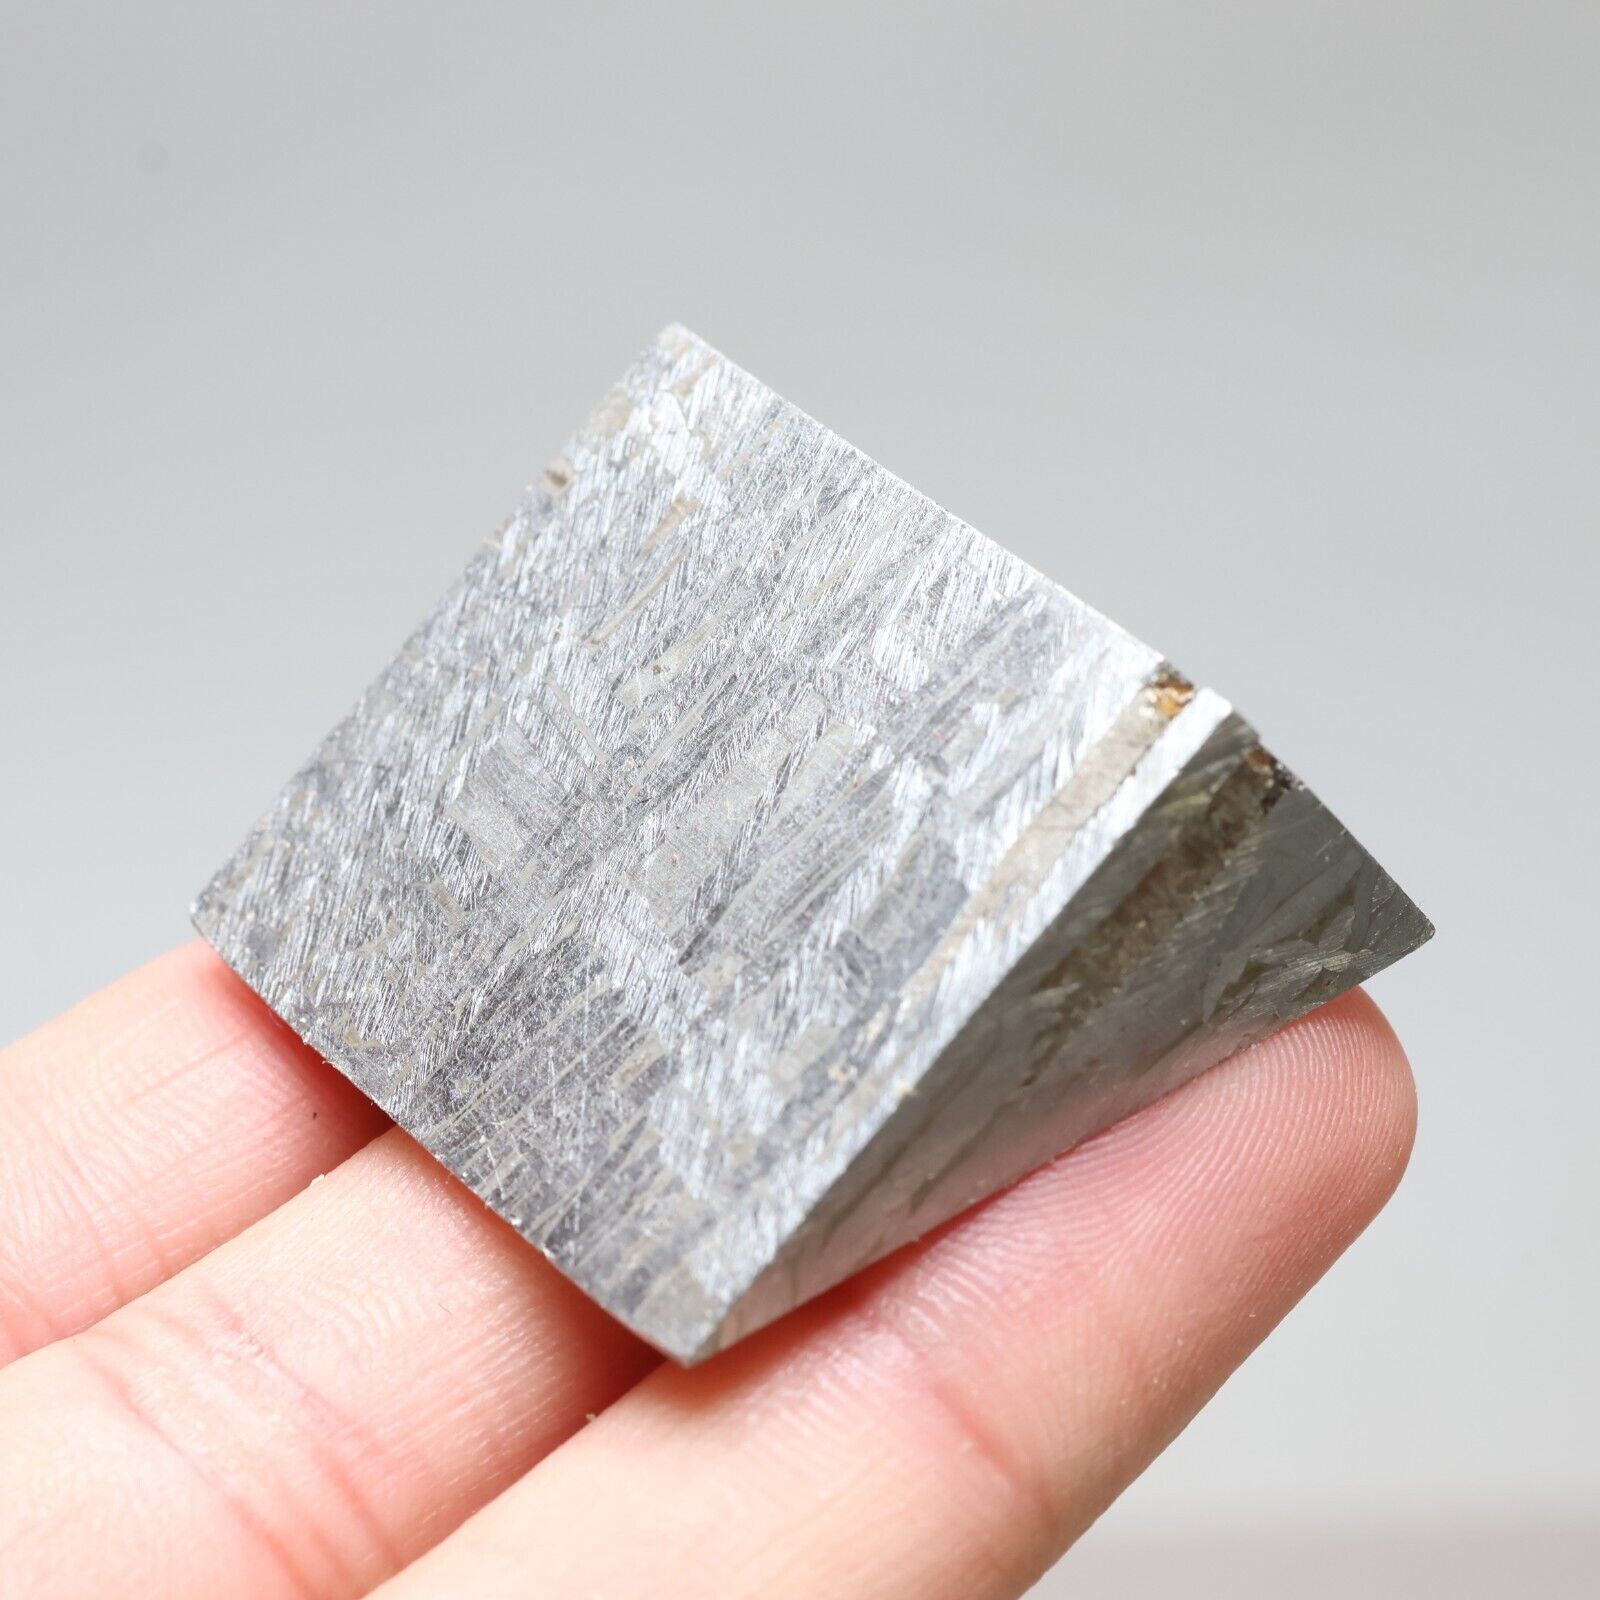 163g Muonionalusta meteorite part slice  A2558